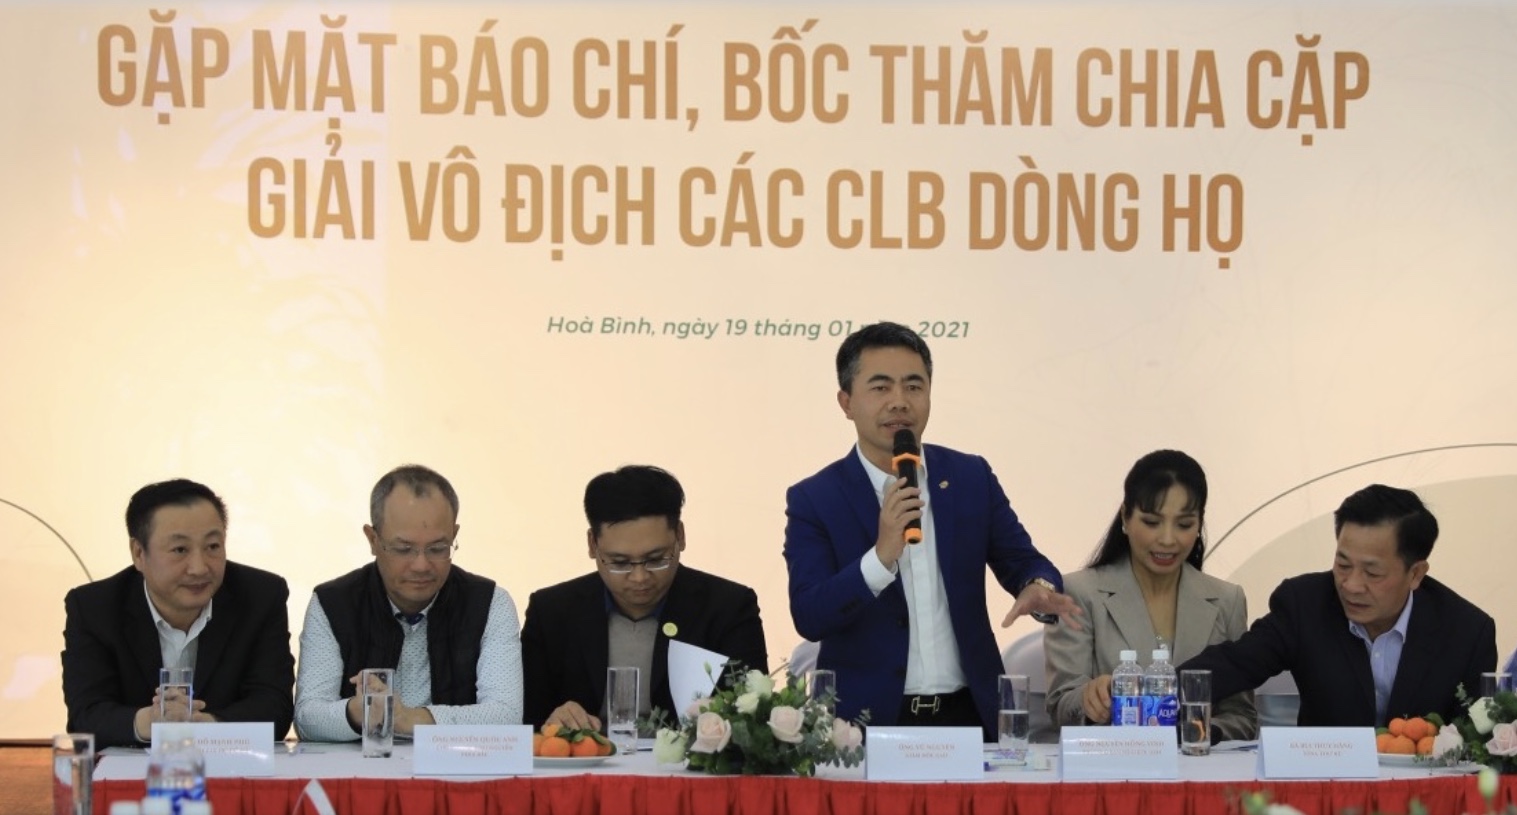 Ông Nguyễn Hồng Vinh - Trưởng BTC, phát biểu tại buổi họp báo